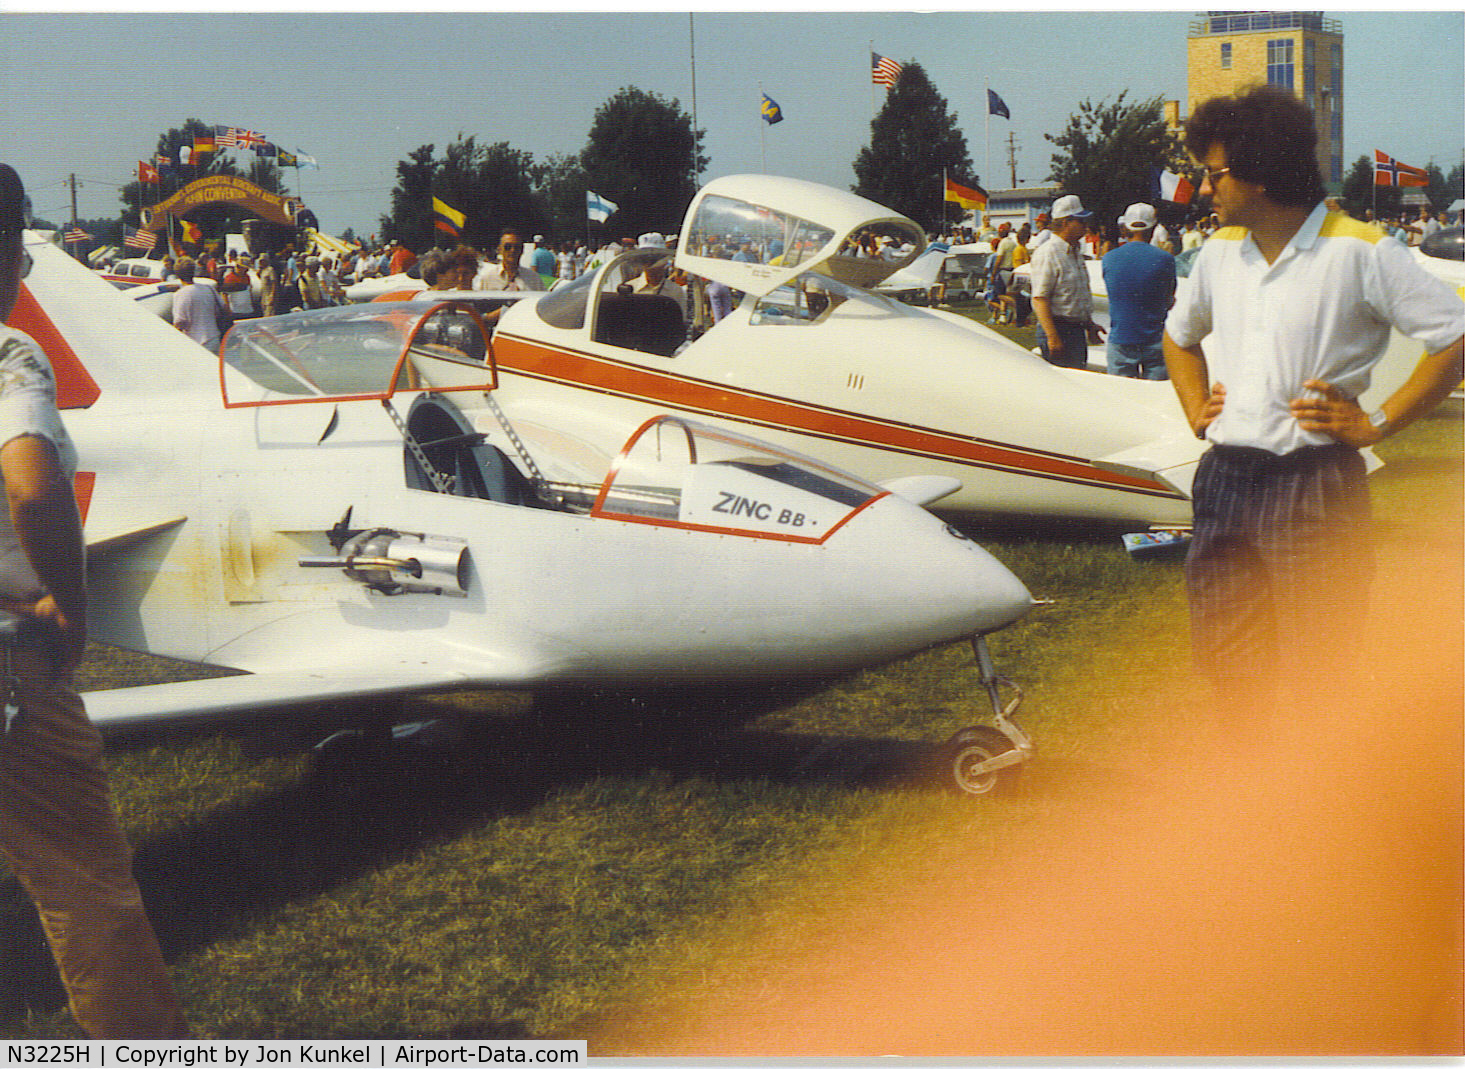 N3225H, 1984 Bede BD-5B C/N 3033, Photo taken at the Oshkosh airshow.